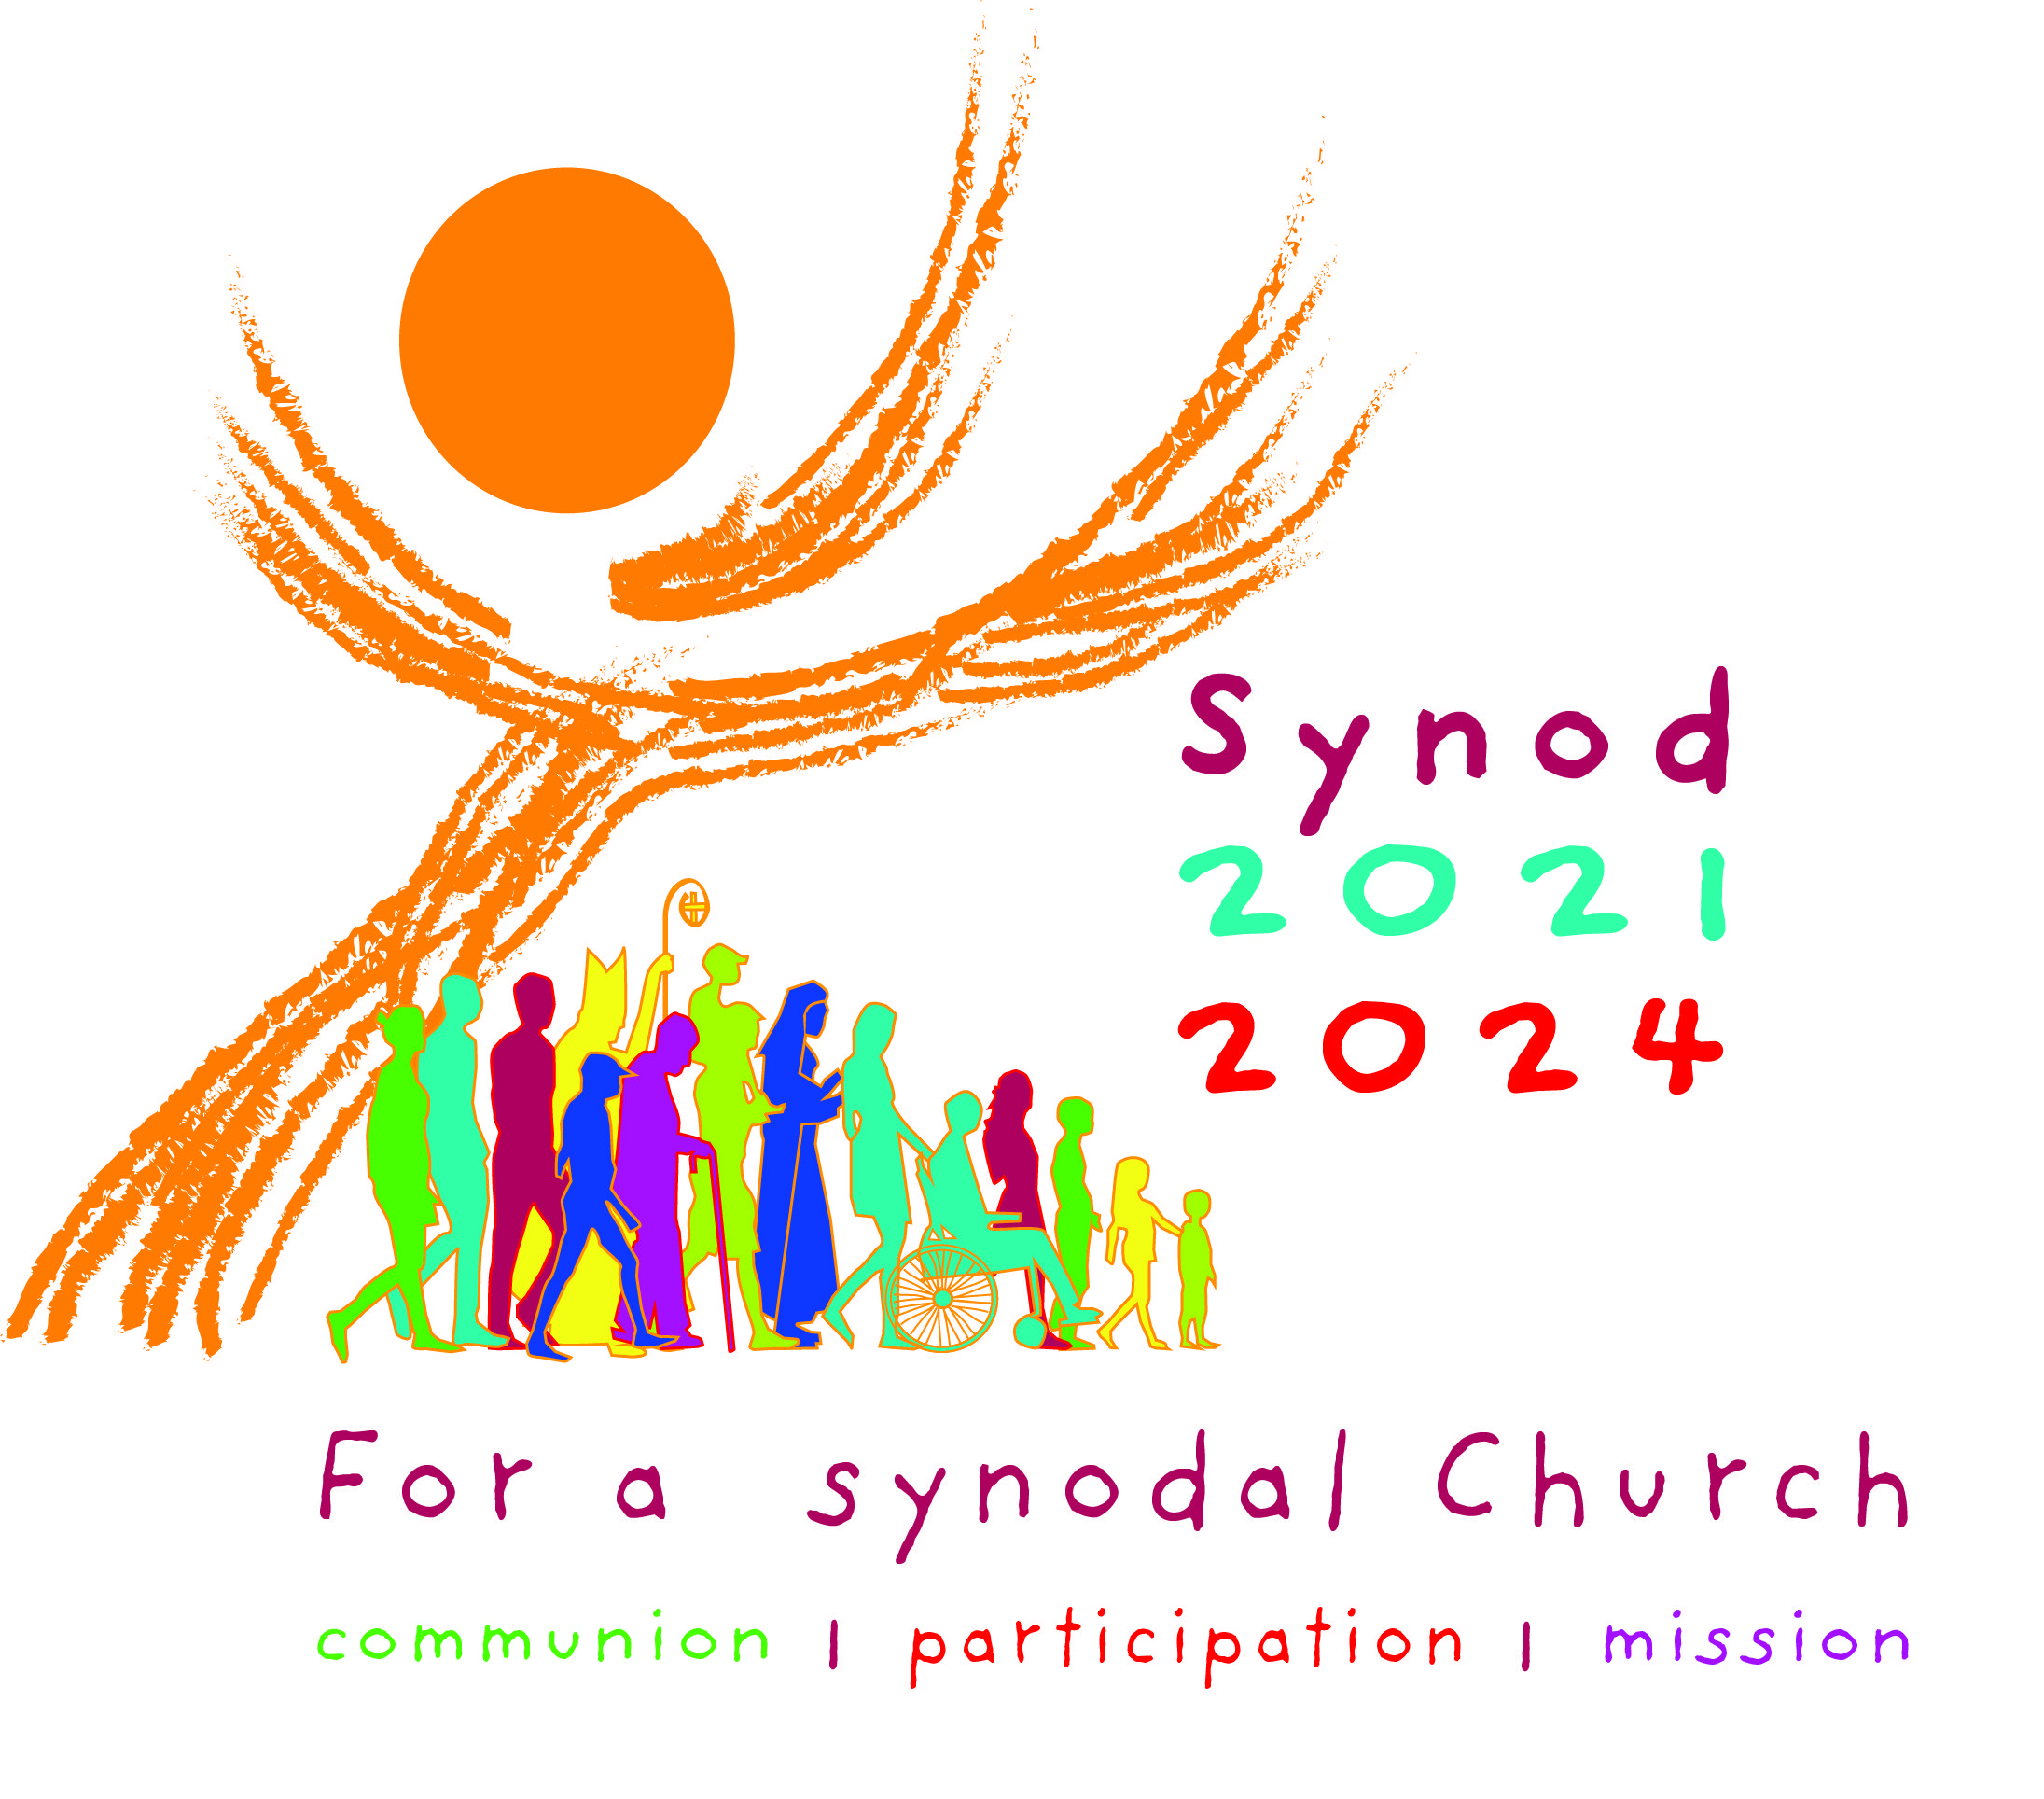 Synod 2021-2024| For a synodal Church